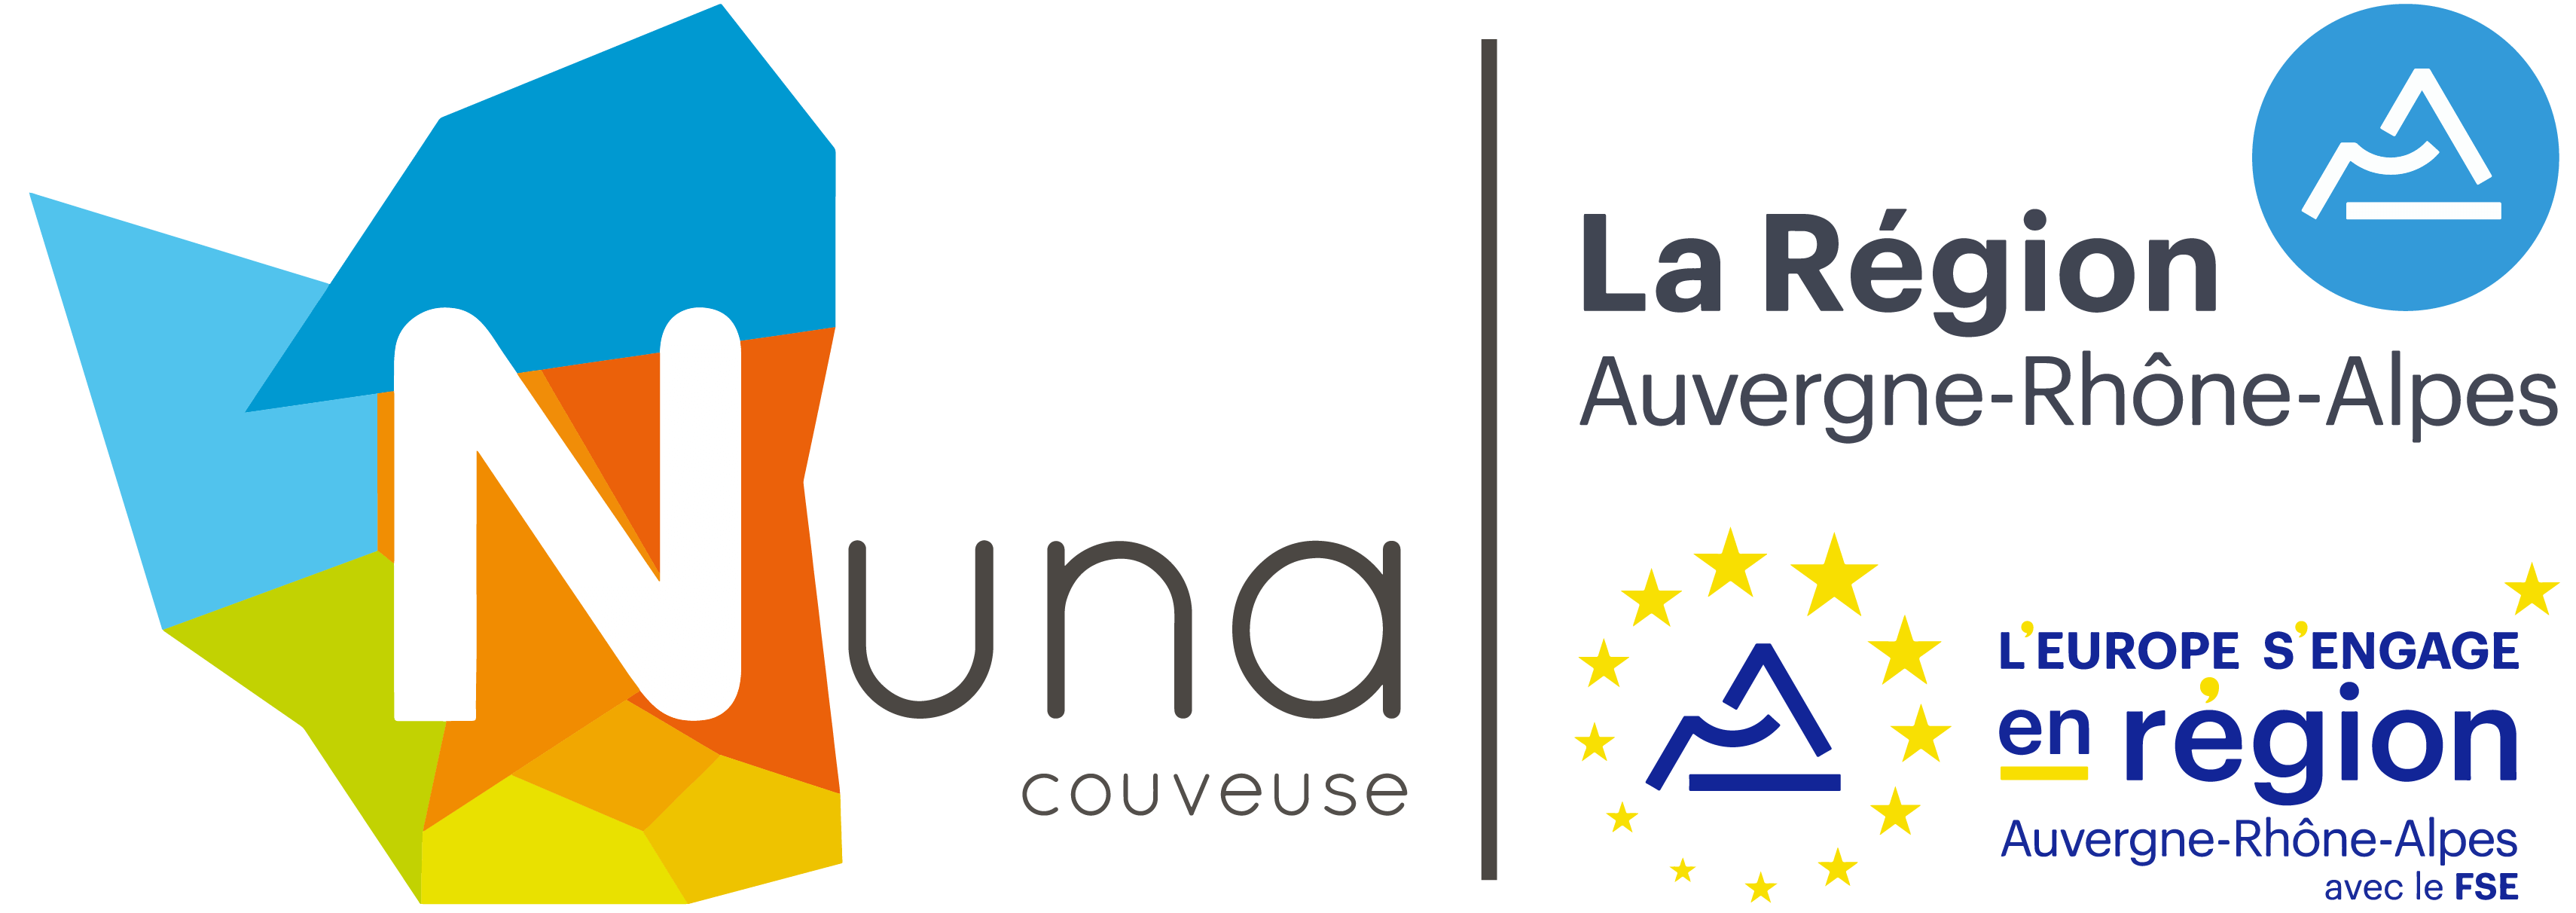 Couveuse Nuna, un service de Nuna Développement